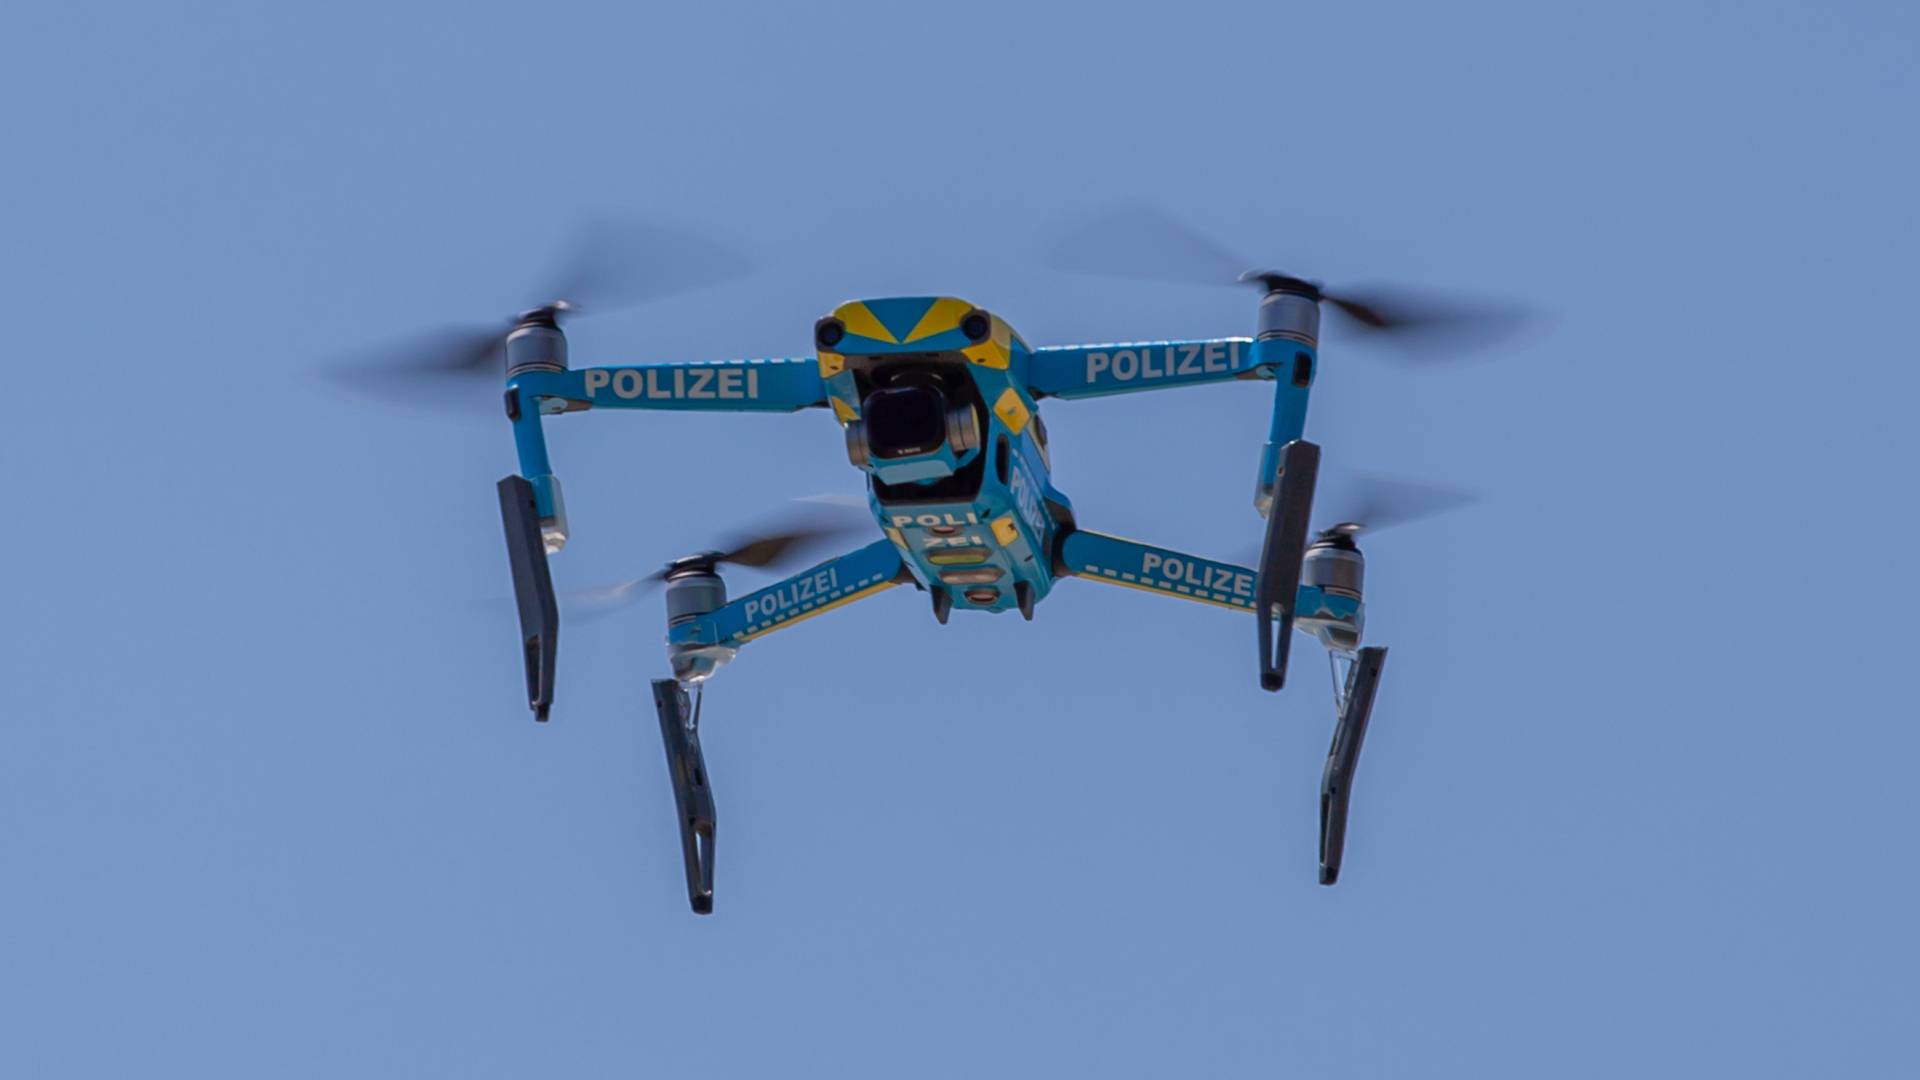 Polizei-Drohnen finden Schießerei